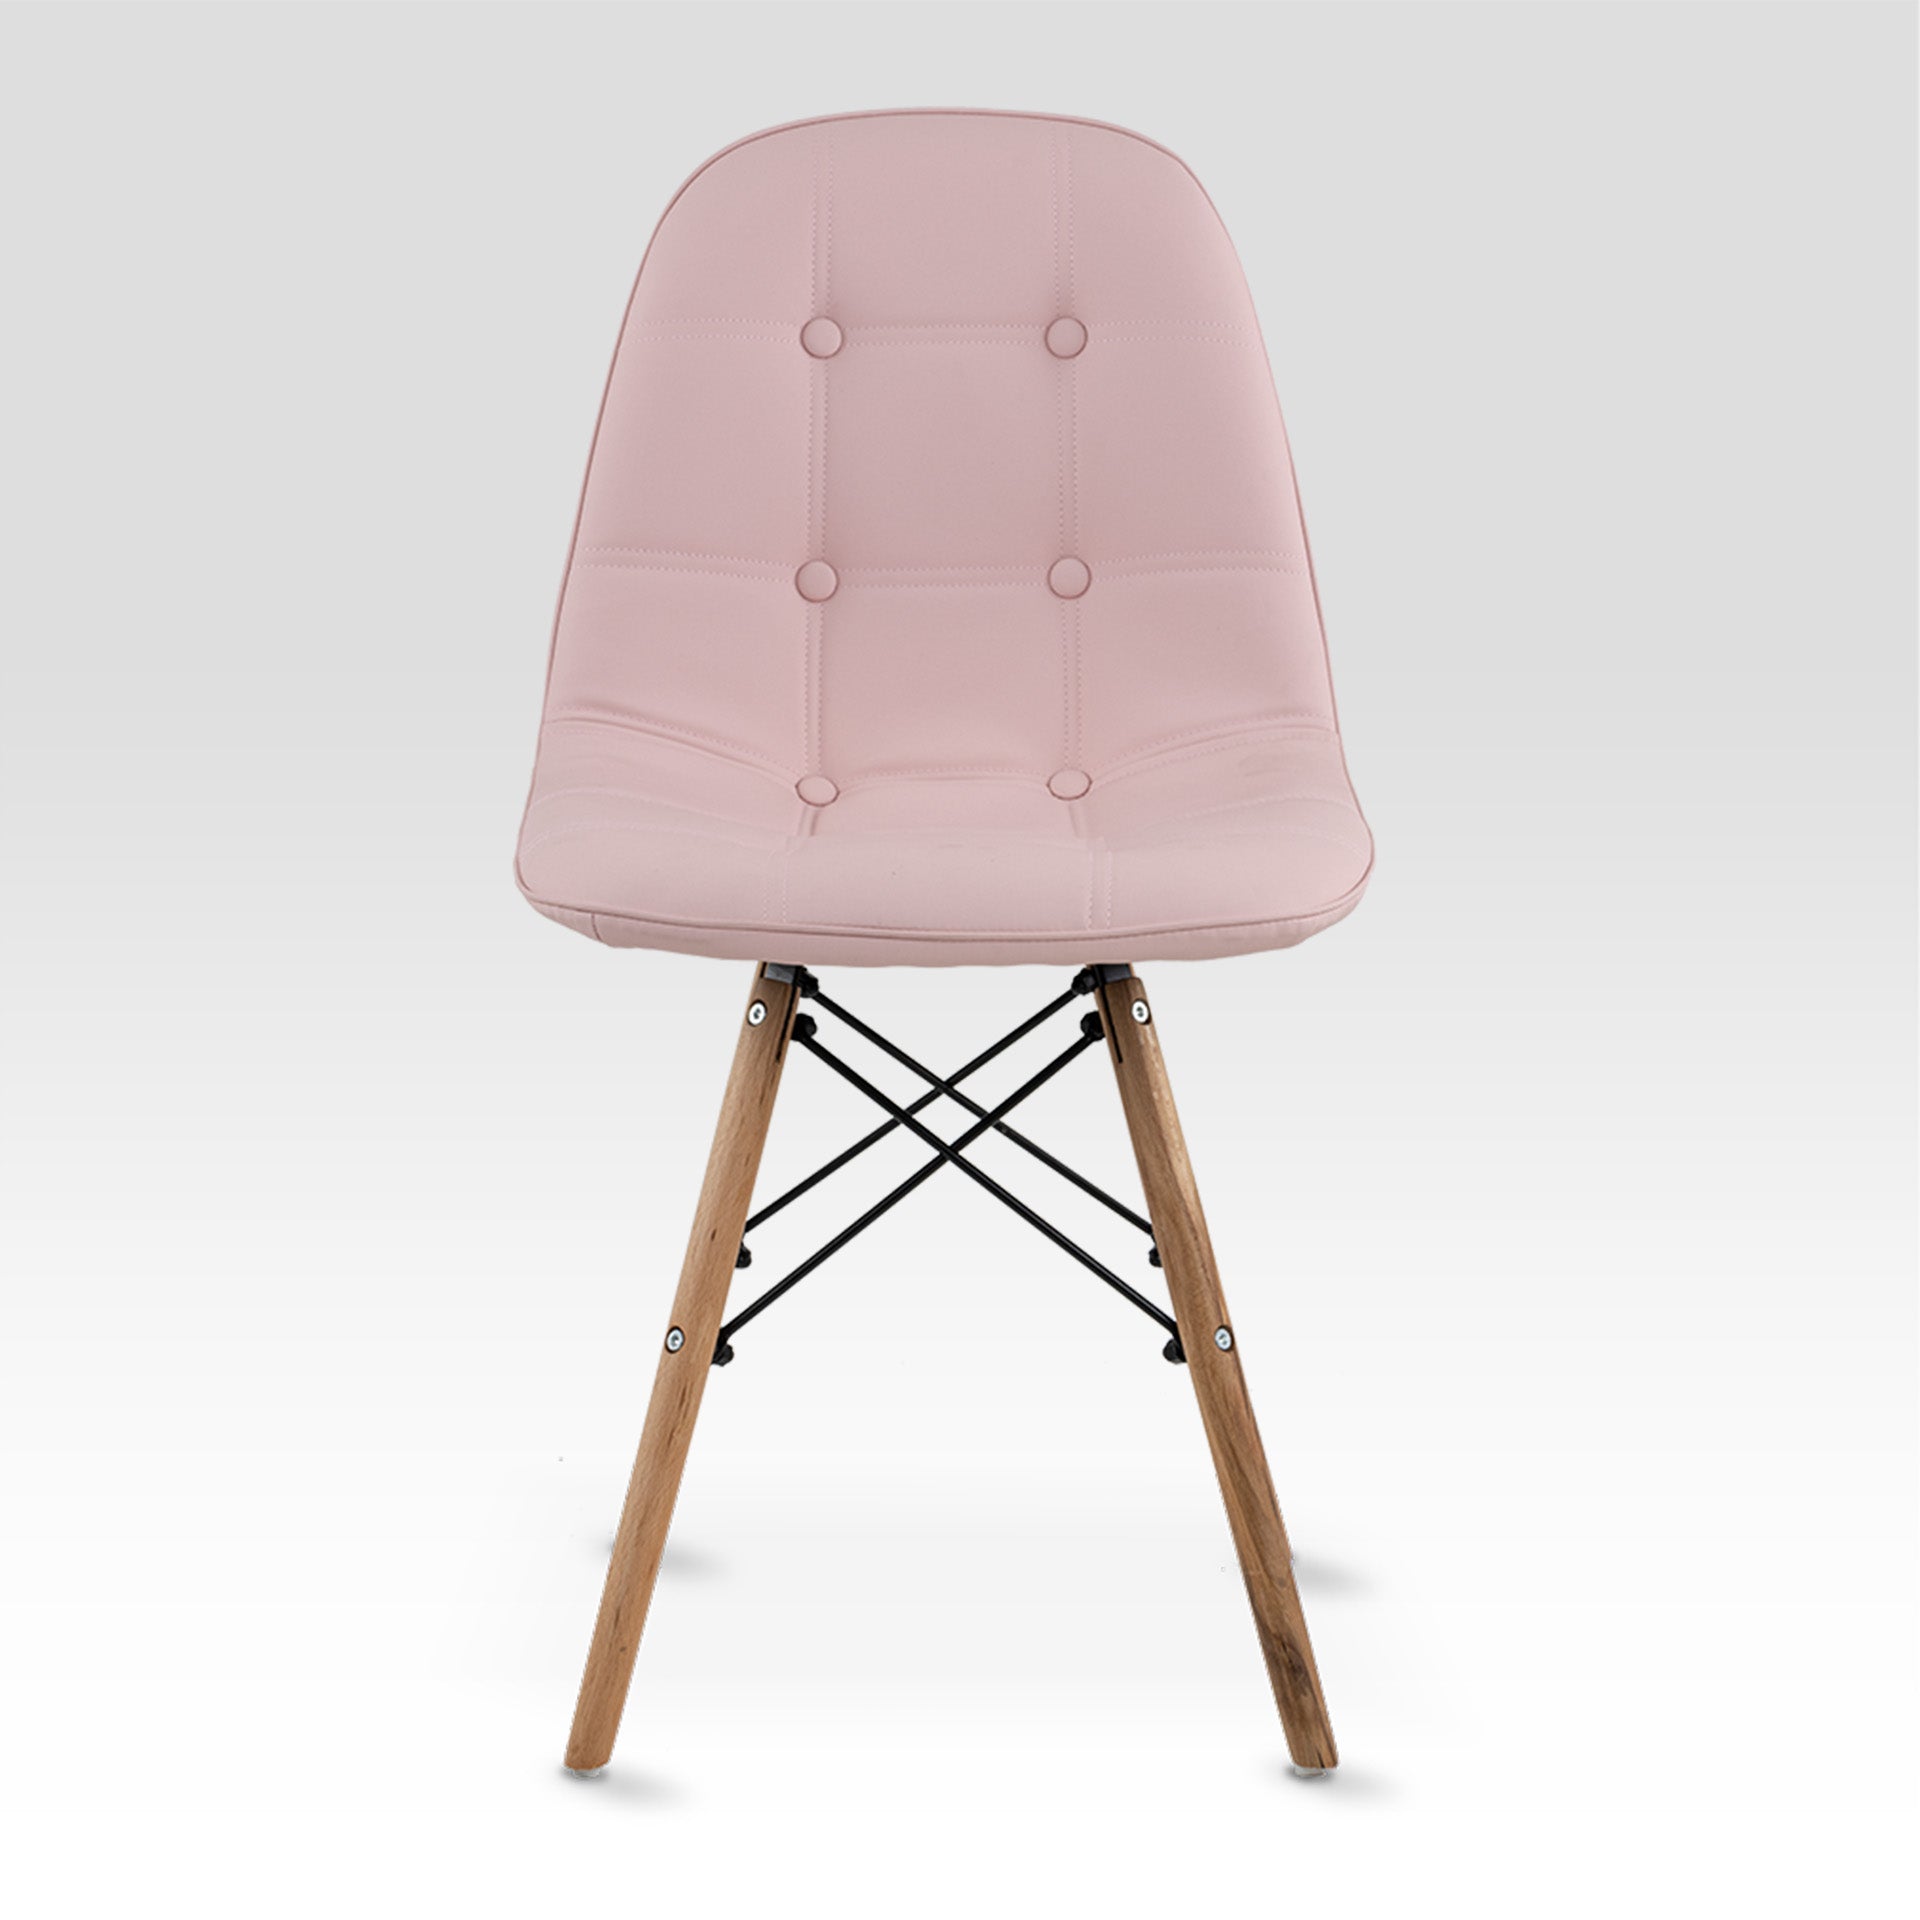 Frente completo de la silla shell con botones de color rosa. Silla Moderna Eames con Botones Elegante y Vanguardista | Silla de Comedor, Oficina, Sala de Estar Estilo Minimalista | Varios Colores (Rosa) 